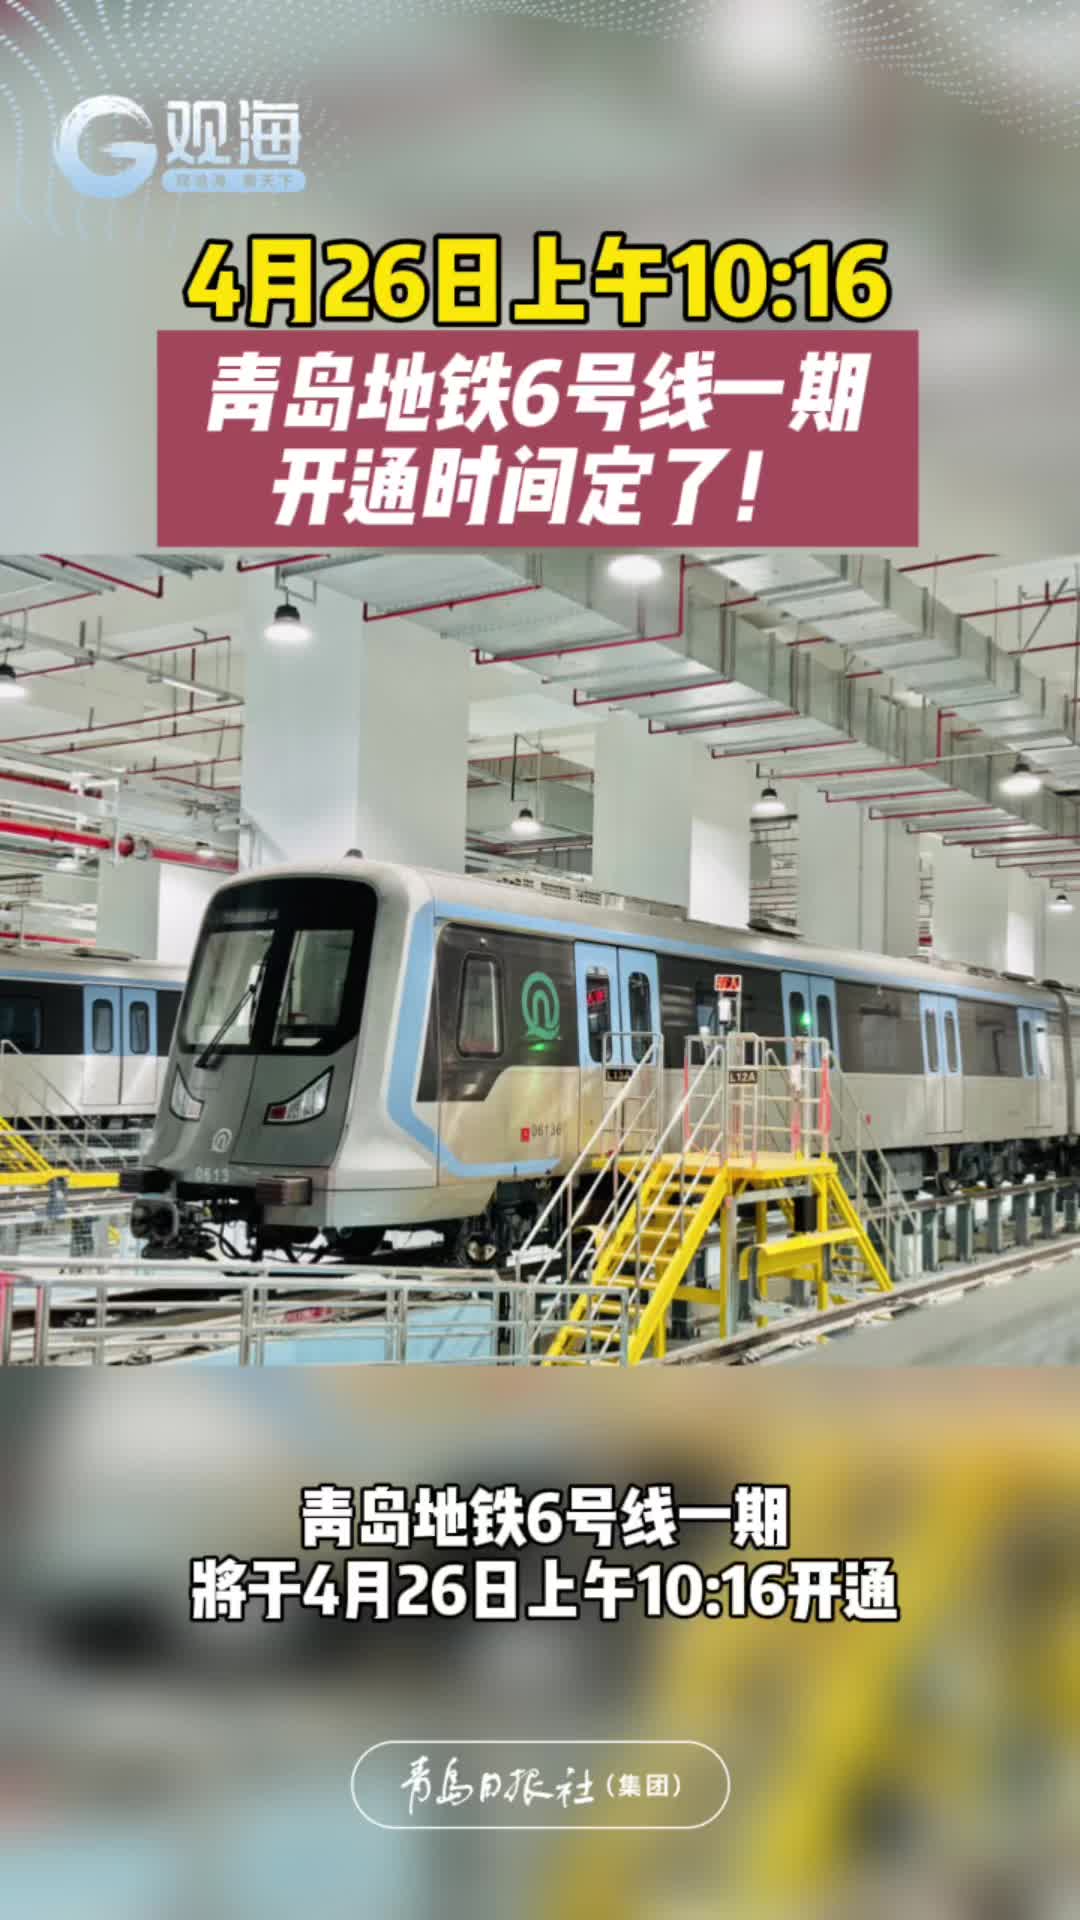 青岛地铁6号线一期将于4月26日上午10:16开通！